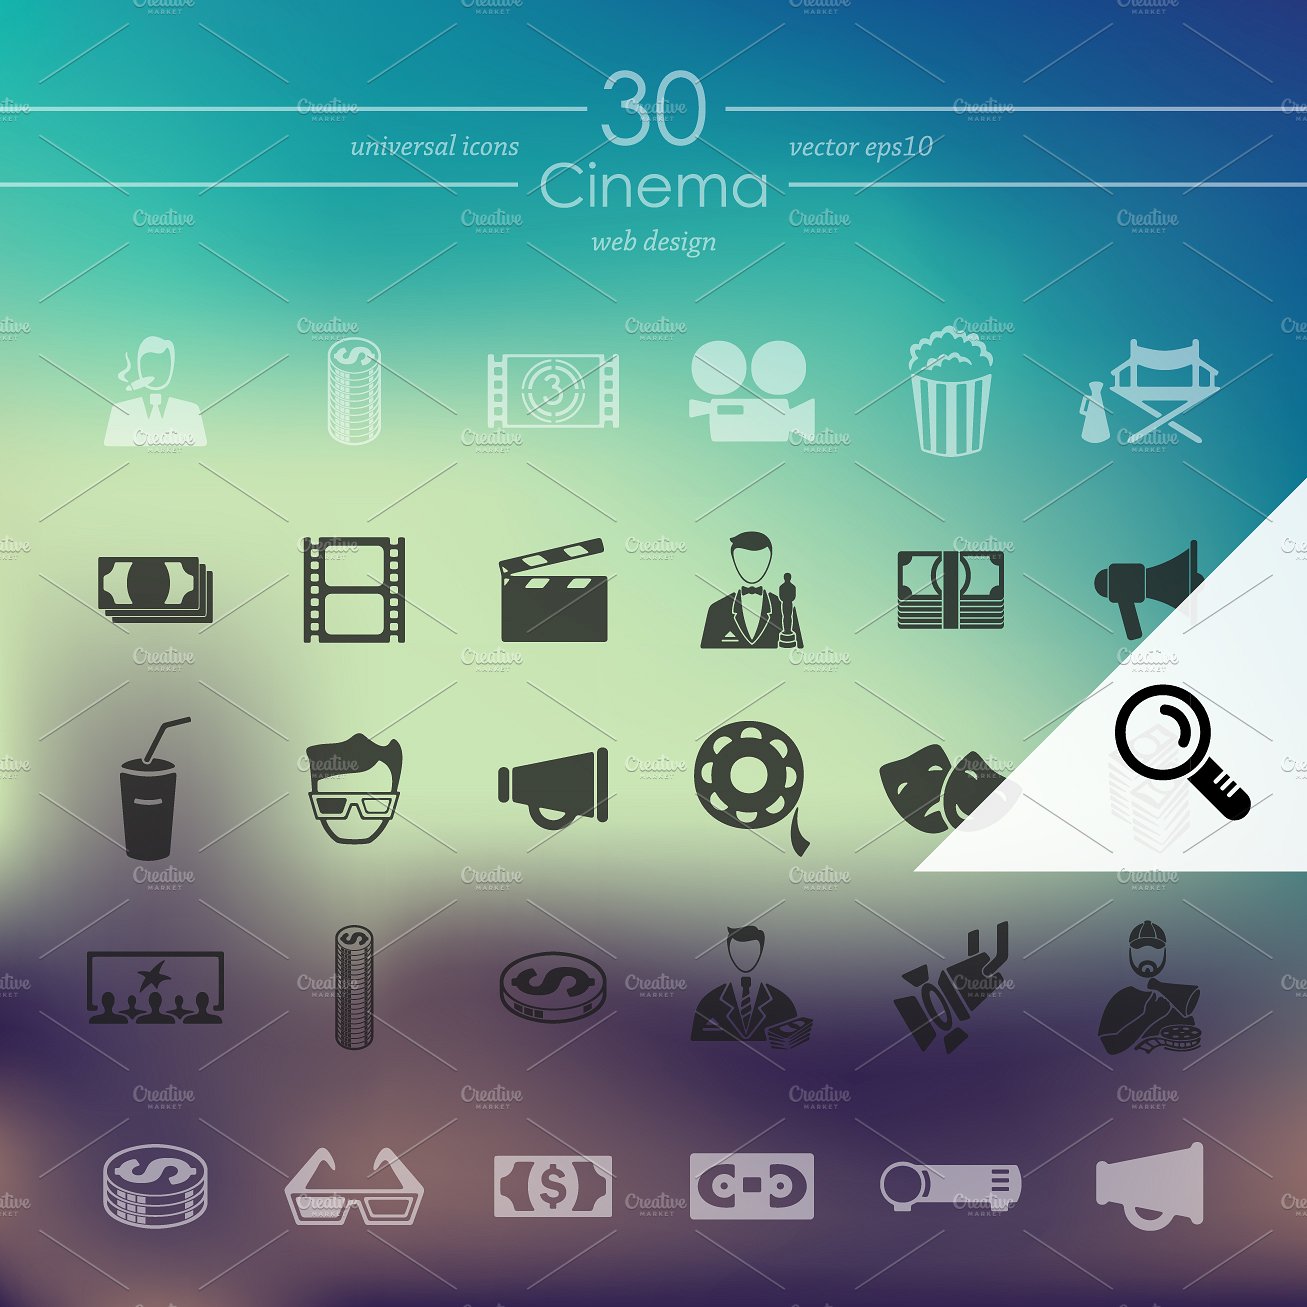 30 CINEMA icons